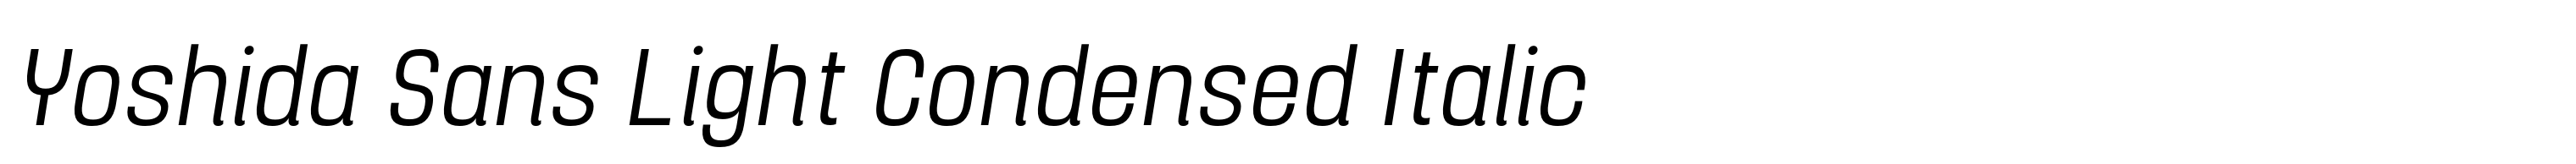 Yoshida Sans Light Condensed Italic